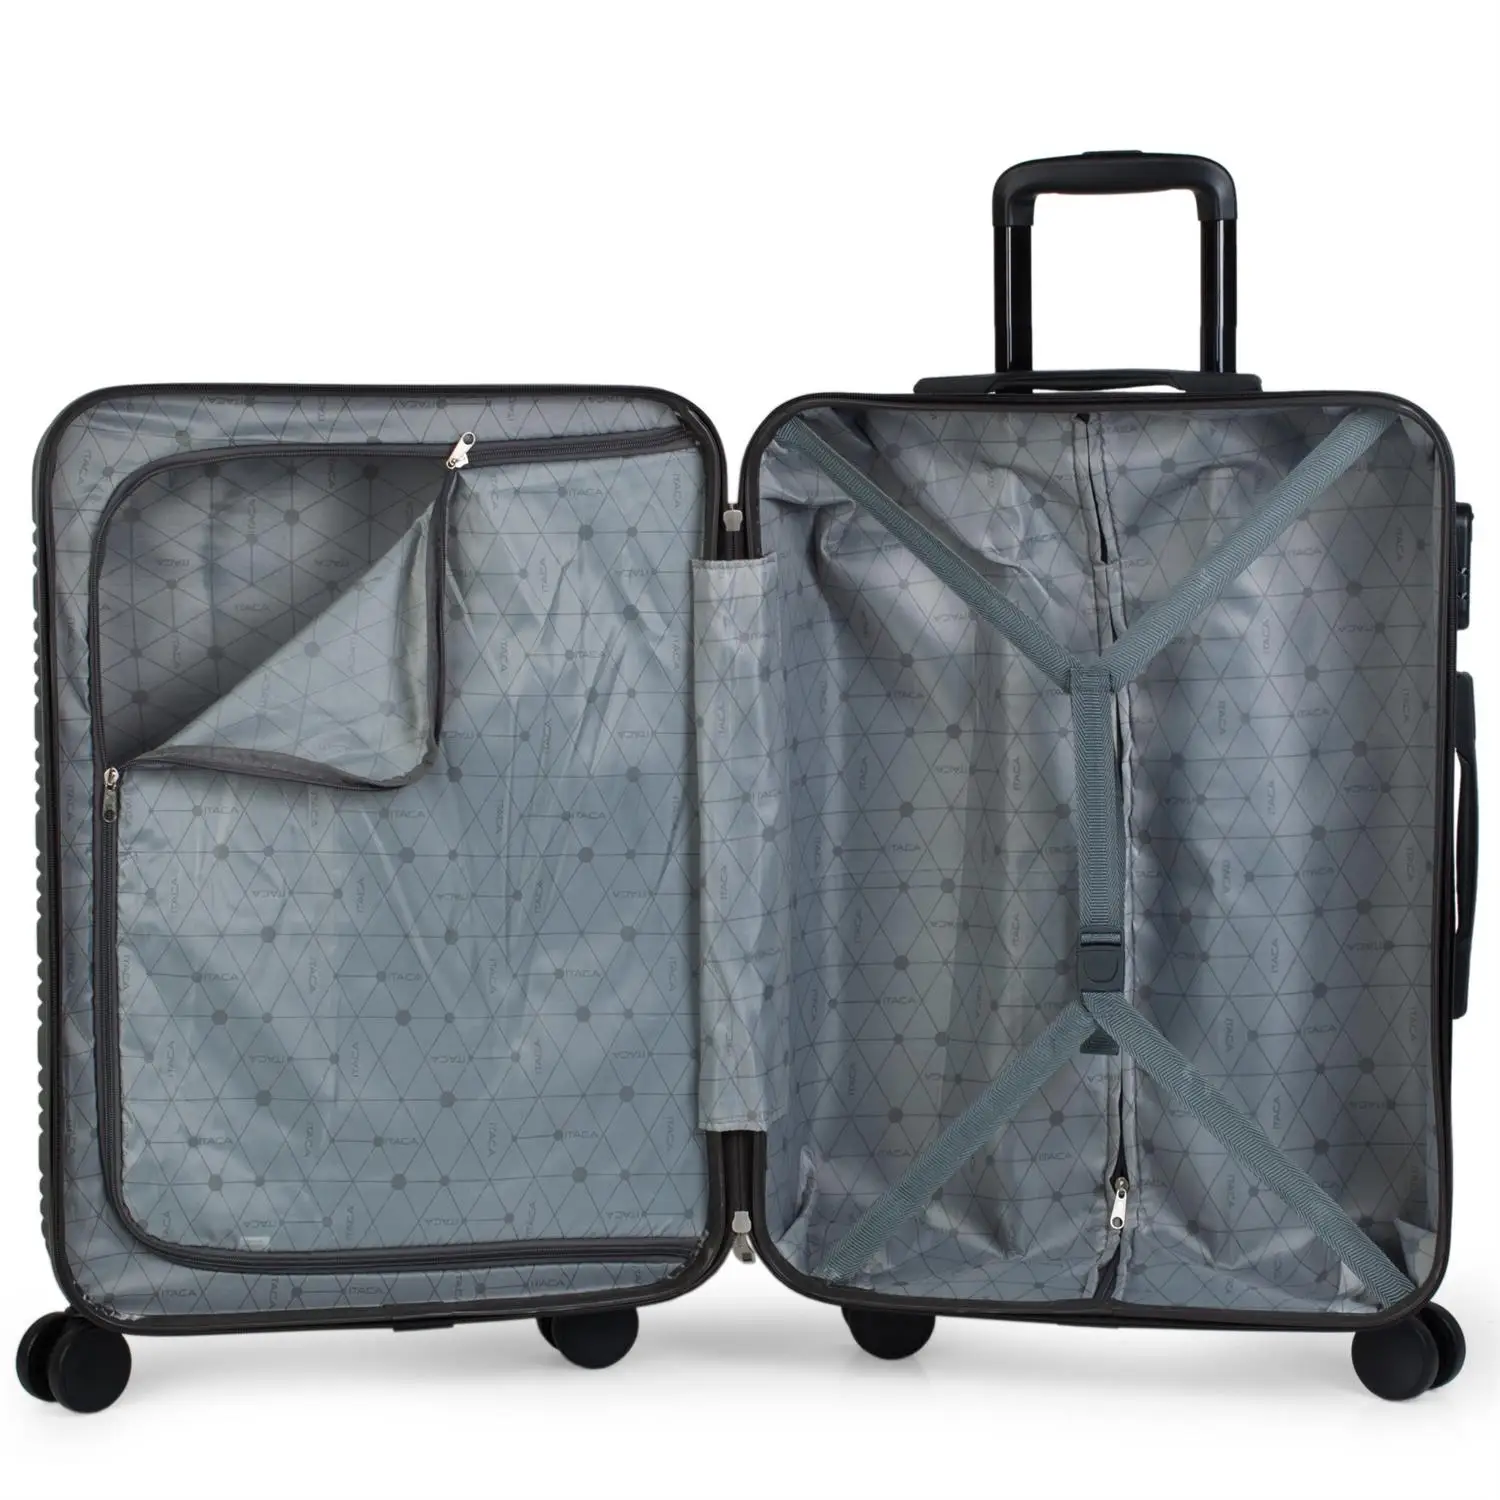 Itaca модель Exe чемодан дорожная жесткая тележка средняя 68 см ABS с регулируемой ручкой, 4X2 поворотные механизмы колес, 2 ручки и замок